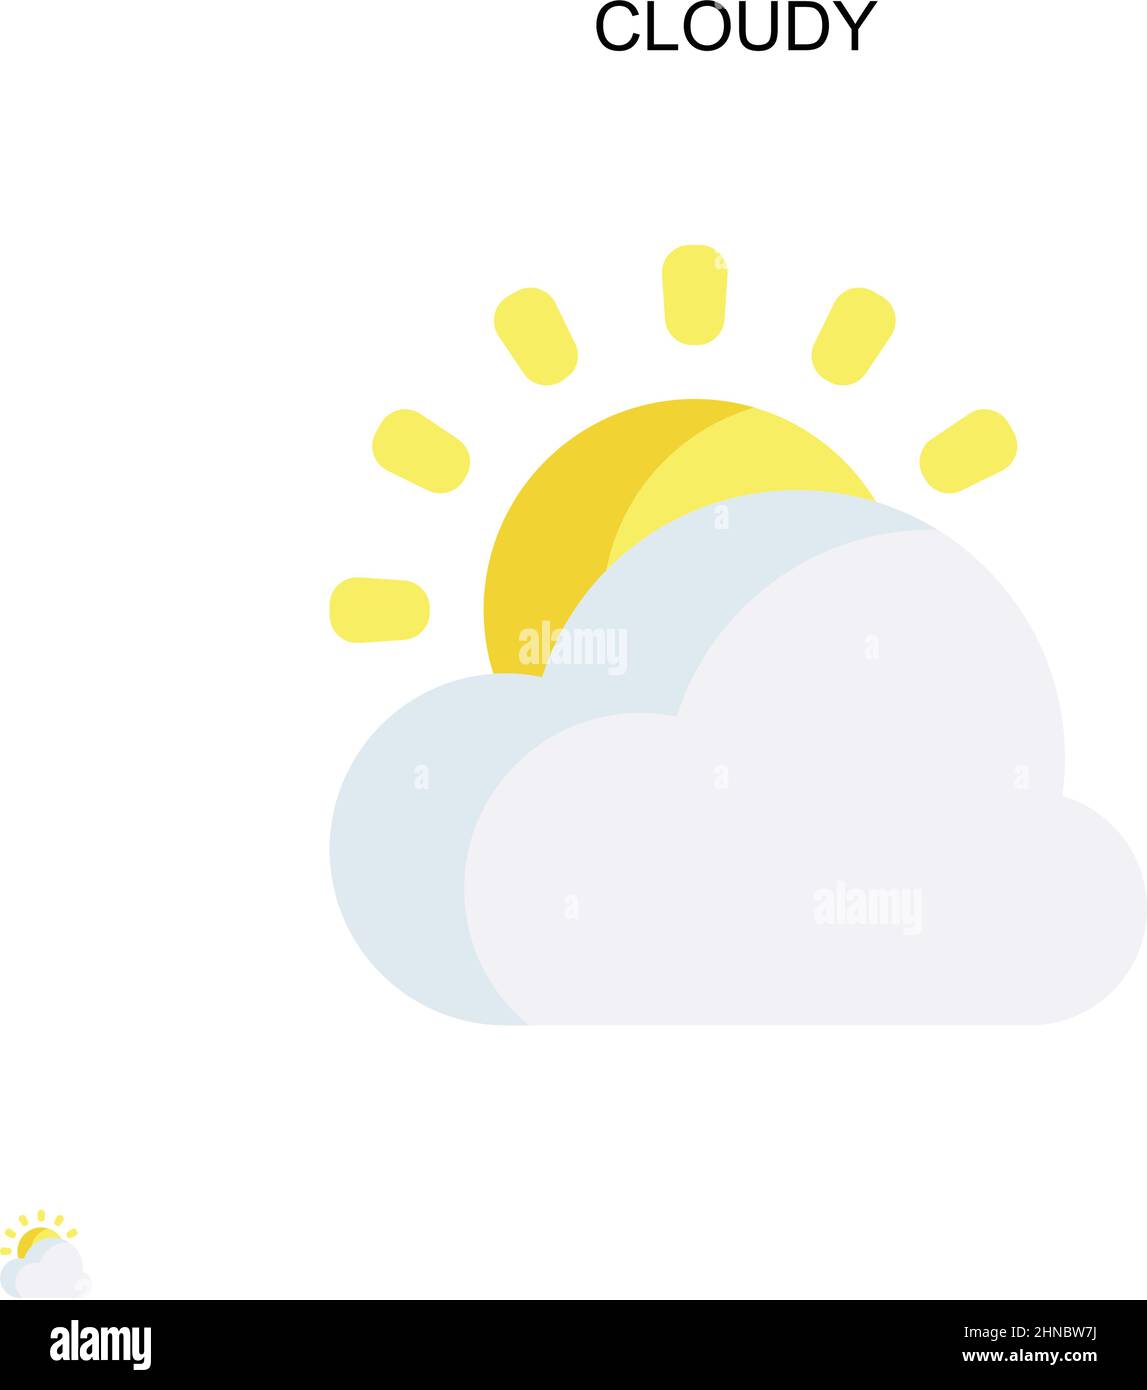 Icona del vettore Cloudy Simple. Modello di disegno del simbolo di illustrazione per l'elemento dell'interfaccia utente mobile Web. Illustrazione Vettoriale